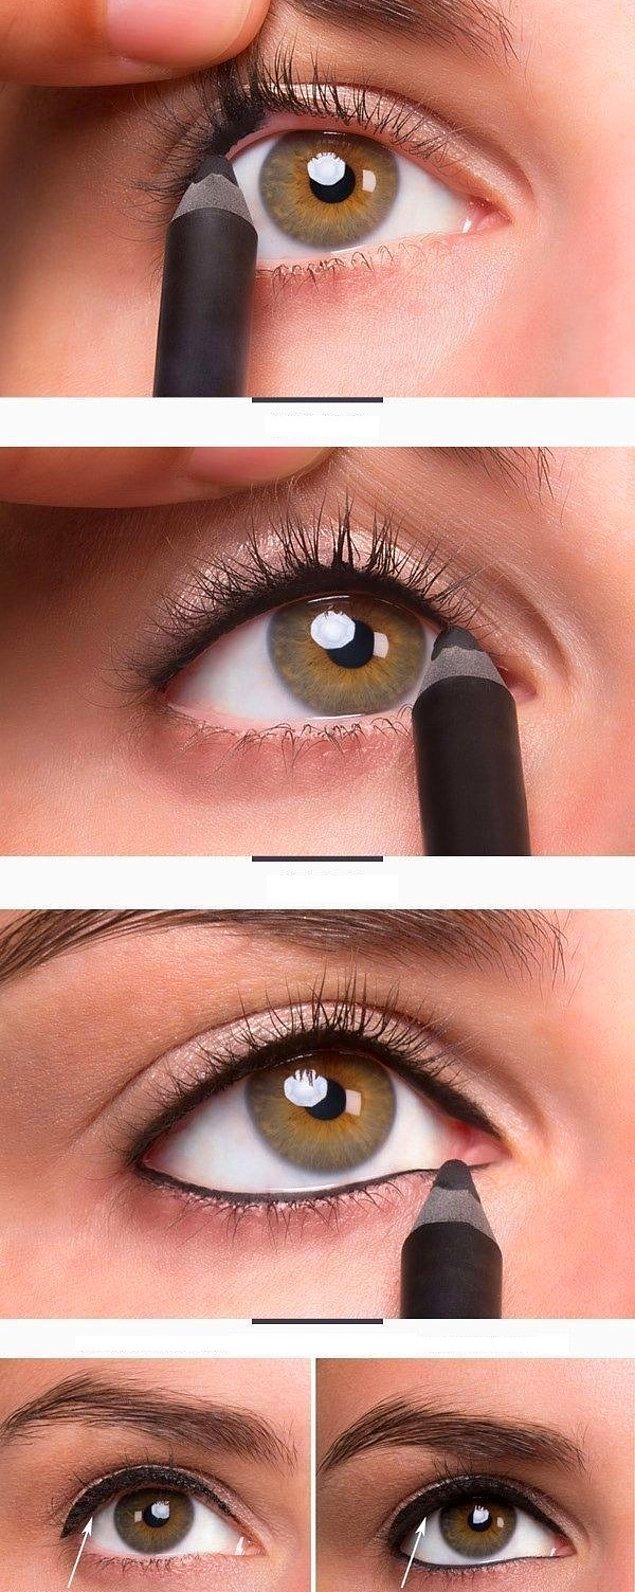 12. Eğer göz kapaklarınız yoğun bir eyeliner çizgisi için küçükse, üst kirpik diplerinizi de siyah kalemle doldurarak bu çizgiyi daha altta gösterin.